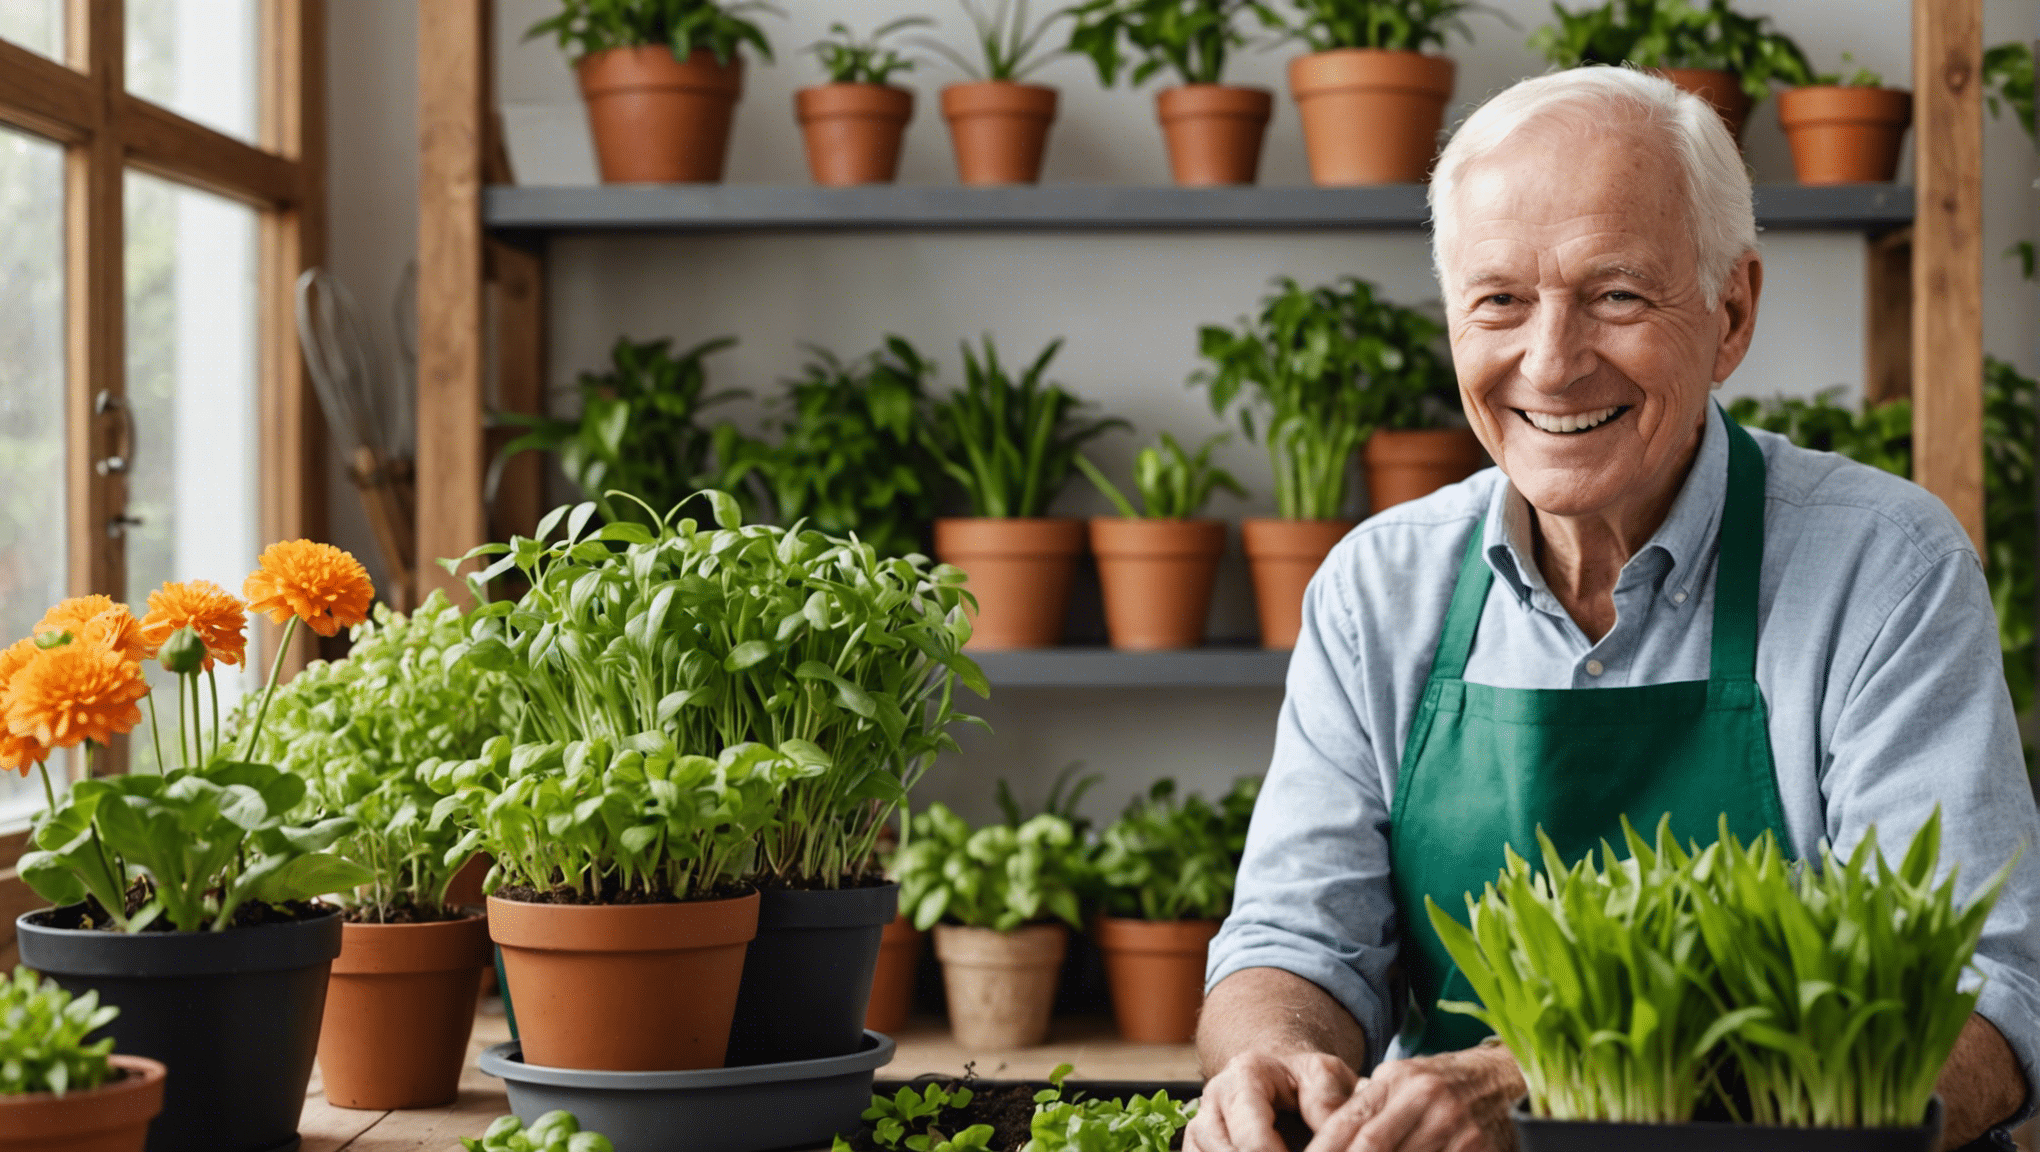 odkryj zalety pomysłów na ogrodnictwo wewnętrzne dla seniorów i dowiedz się, jak może to poprawić ich ogólne samopoczucie i jakość życia.